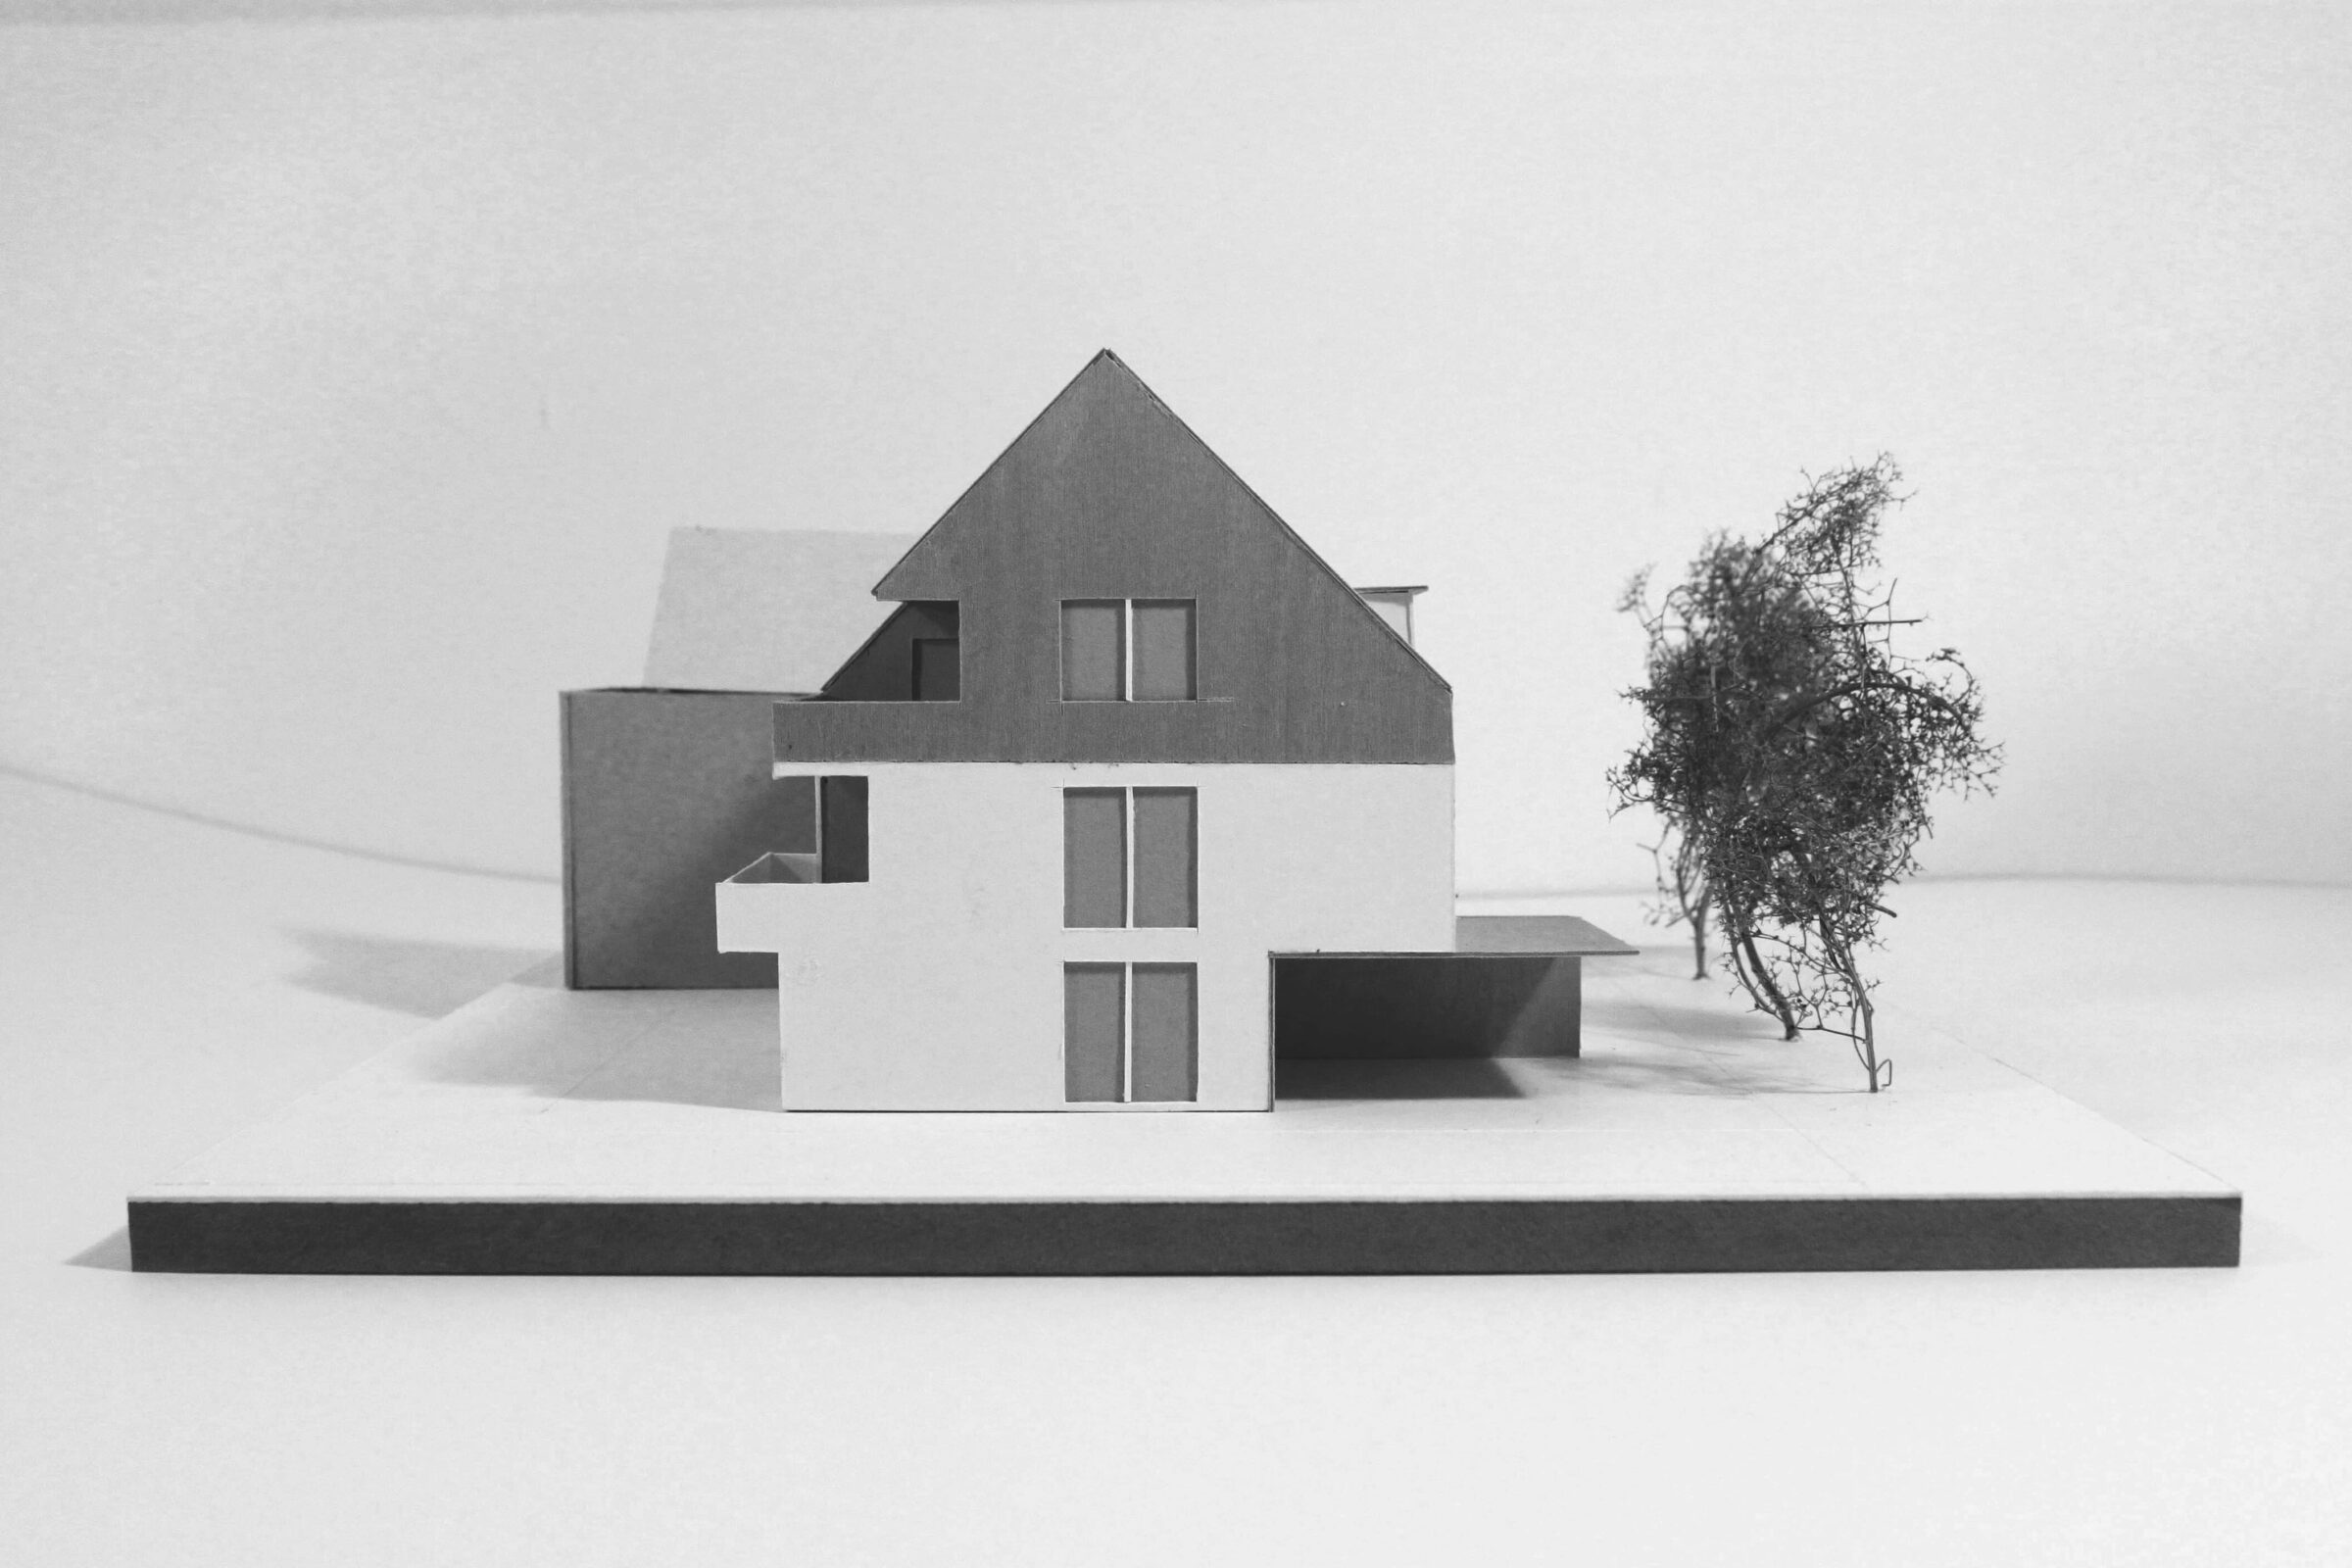 Modell eines neugebauten Doppelhauses mit drei Wohneinheiten